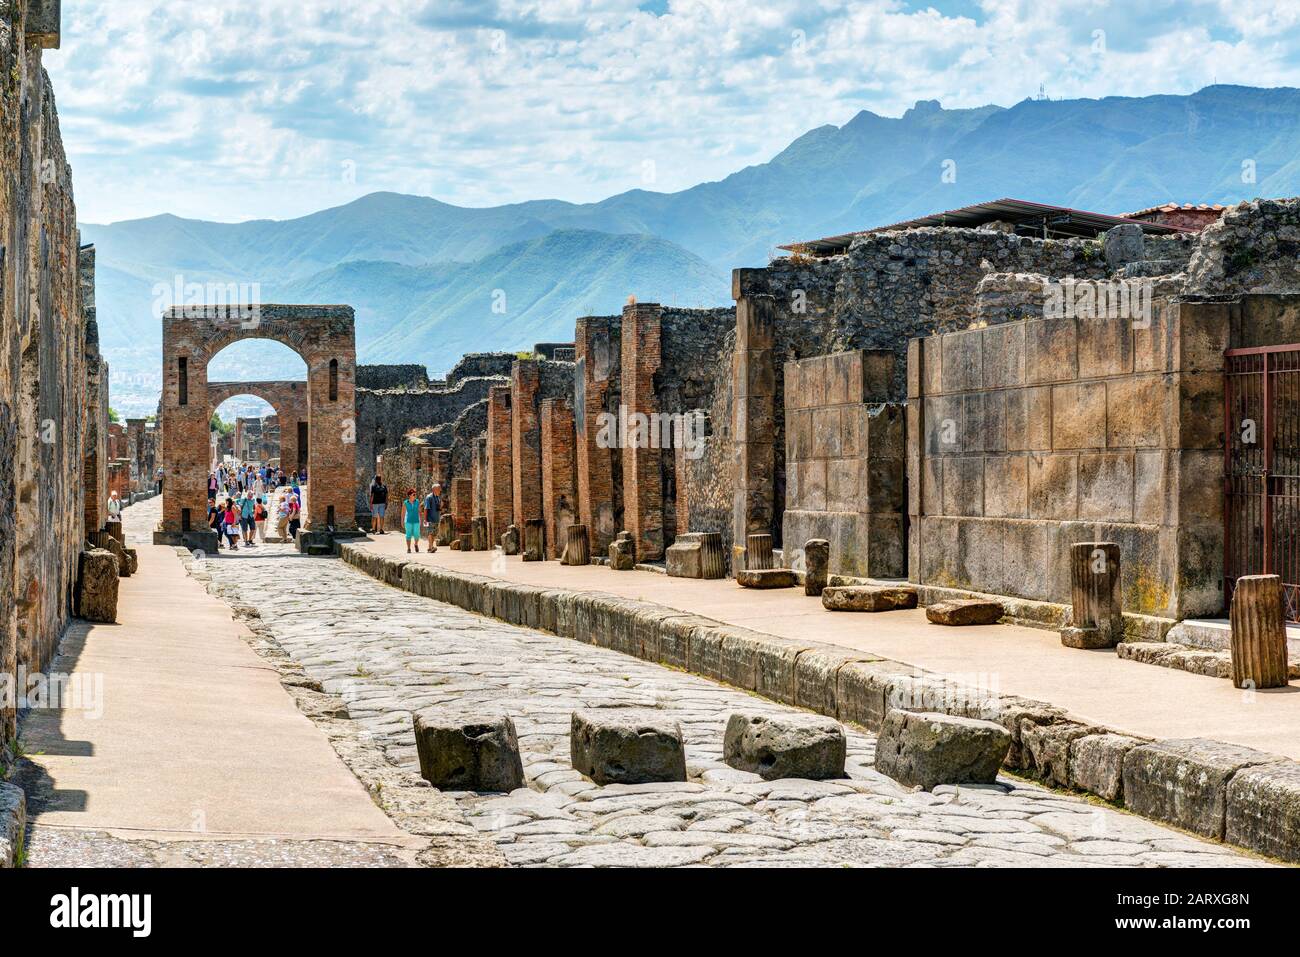 Pompeji, ITALIEN - 13. MAI: Ruinen einer Stadt. Pompeji ist eine antike römische Stadt, die durch den Ausbruch des Vesuvs im Jahr 79 n. Chr. starb. Stockfoto